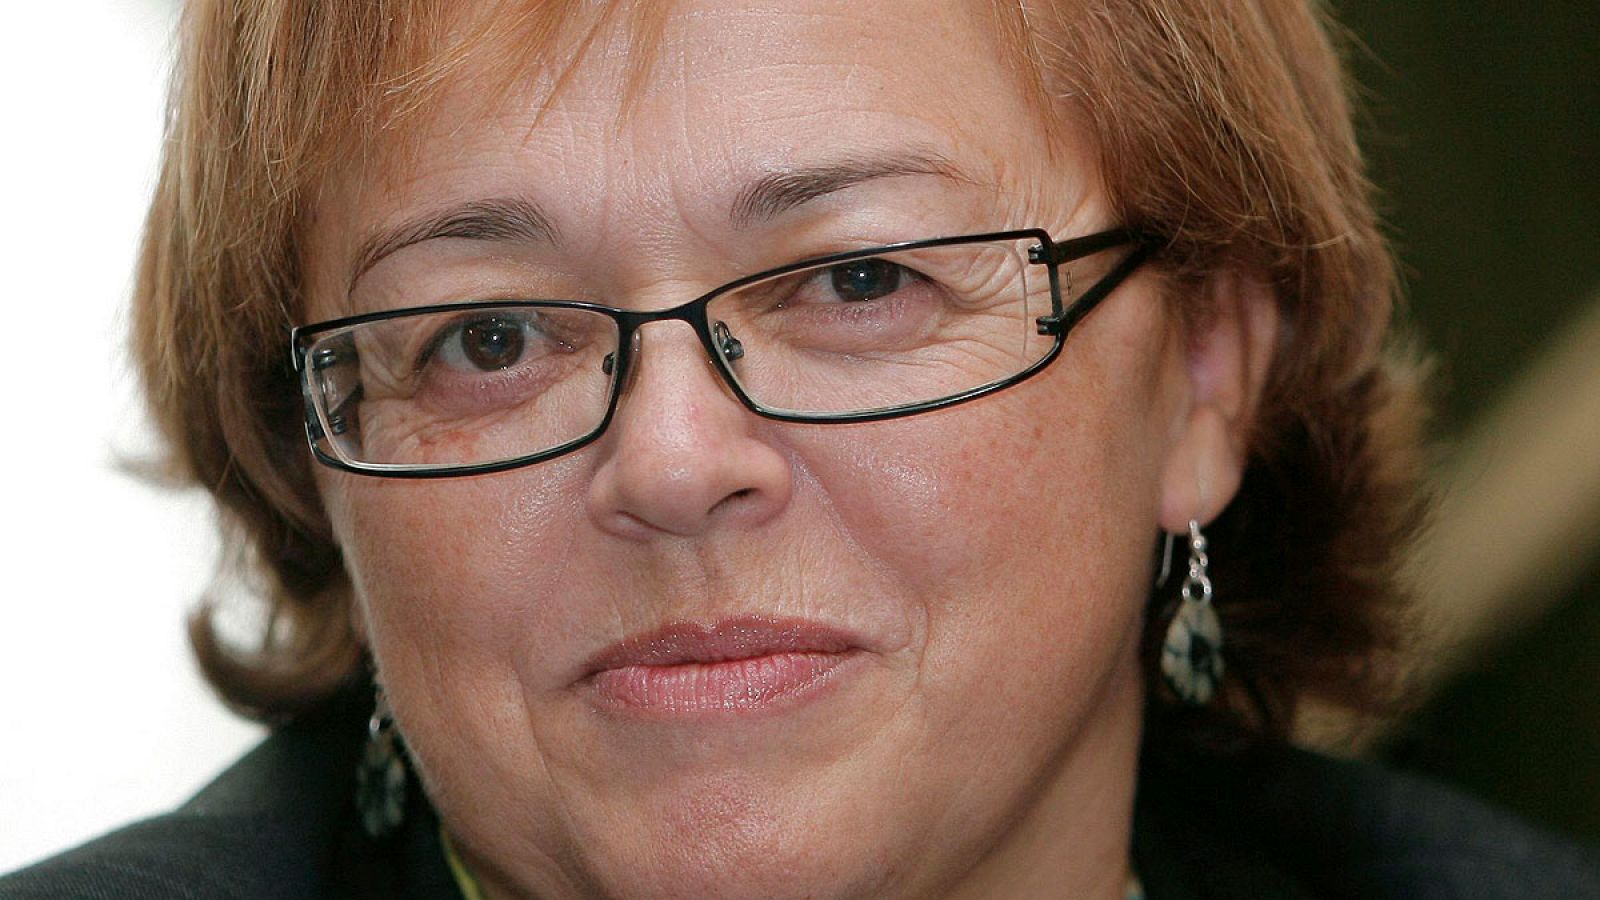 La investigadora Rosa María Menéndez López sustituirá próximamente a Emilio Lora- Tamayo como presidenta del CSIC